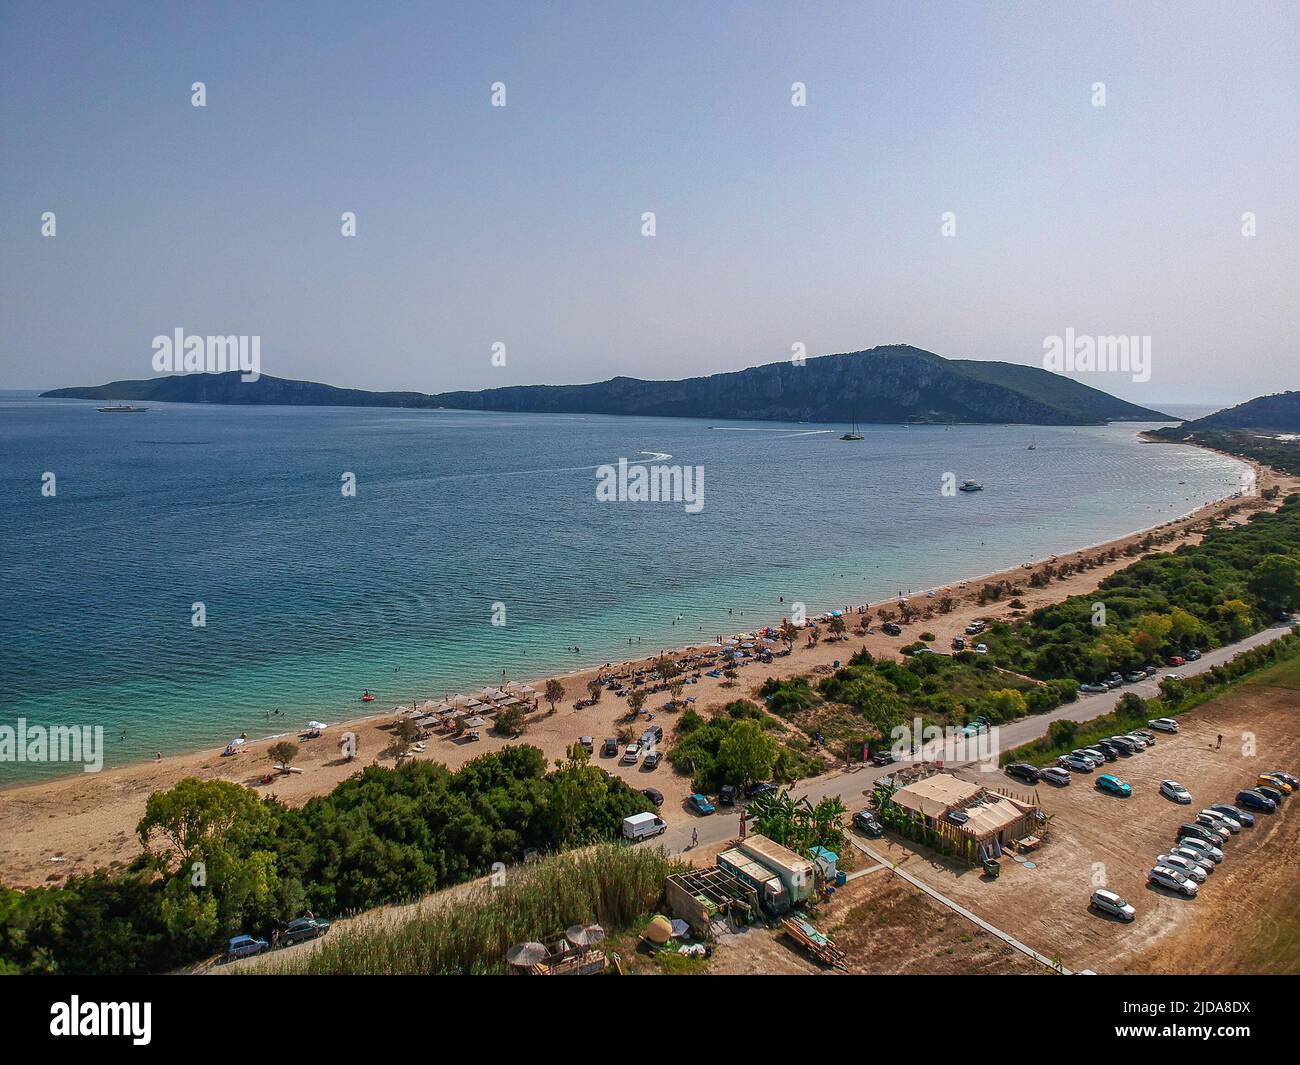 Vista aerea panoramica sulla spiaggia di Divari vicino alla baia di Navarino, Gialova. E' una delle migliori spiagge dell'Europa mediterranea. Bellissima laguna vicino Voido Foto Stock